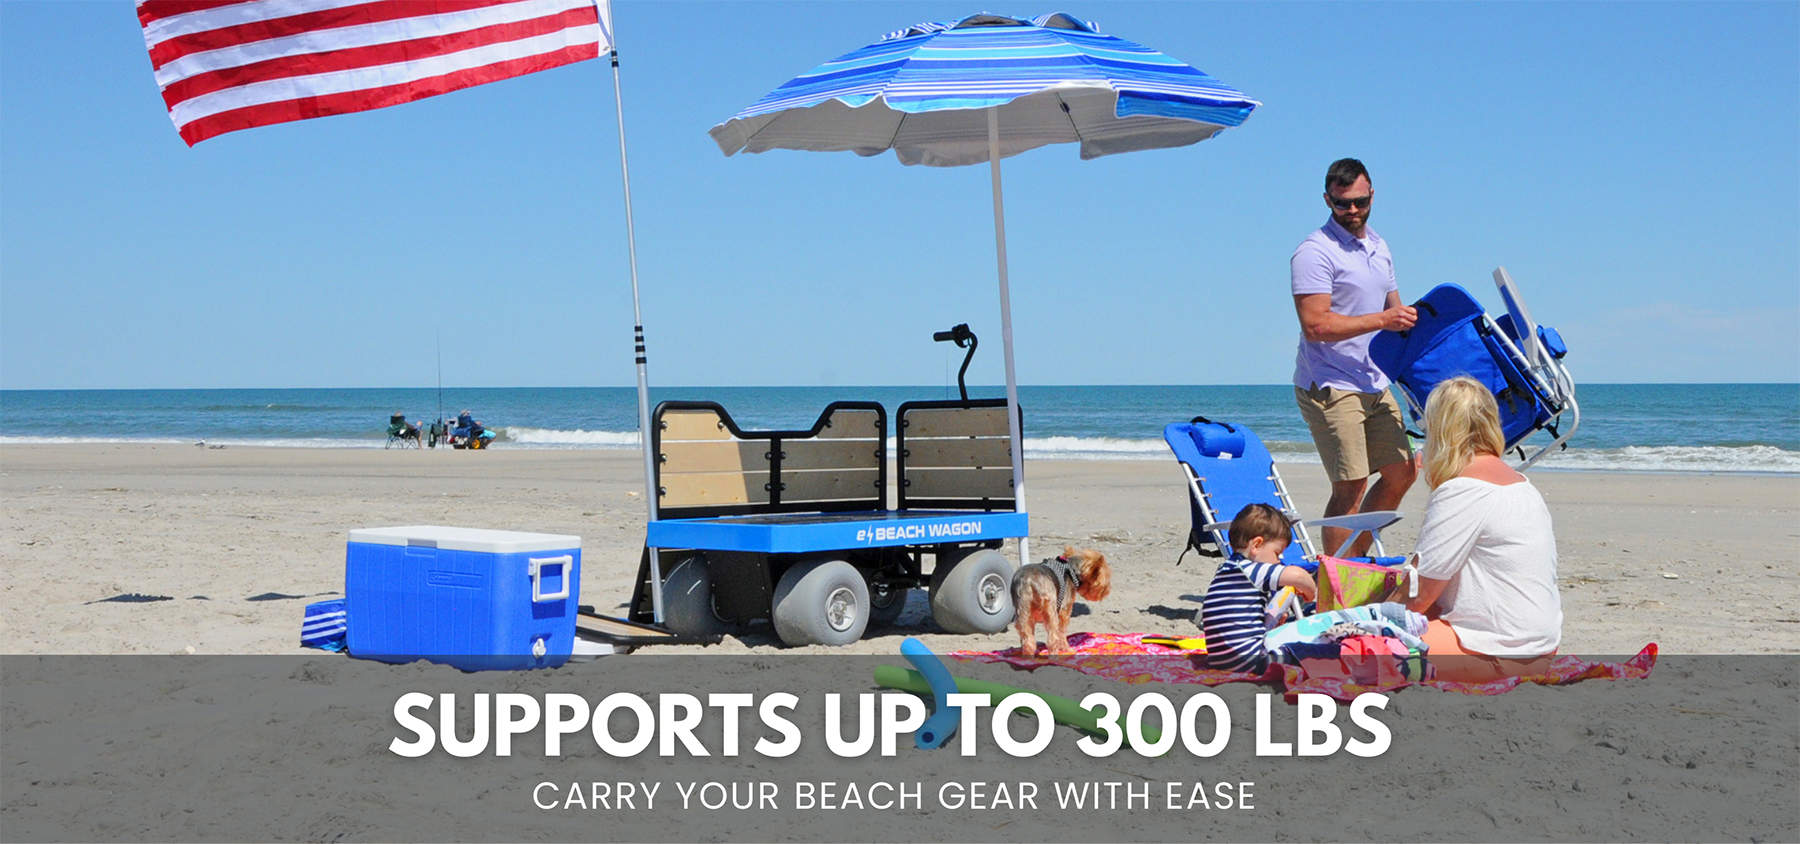 e-Beach Wagon supports 300 lbs